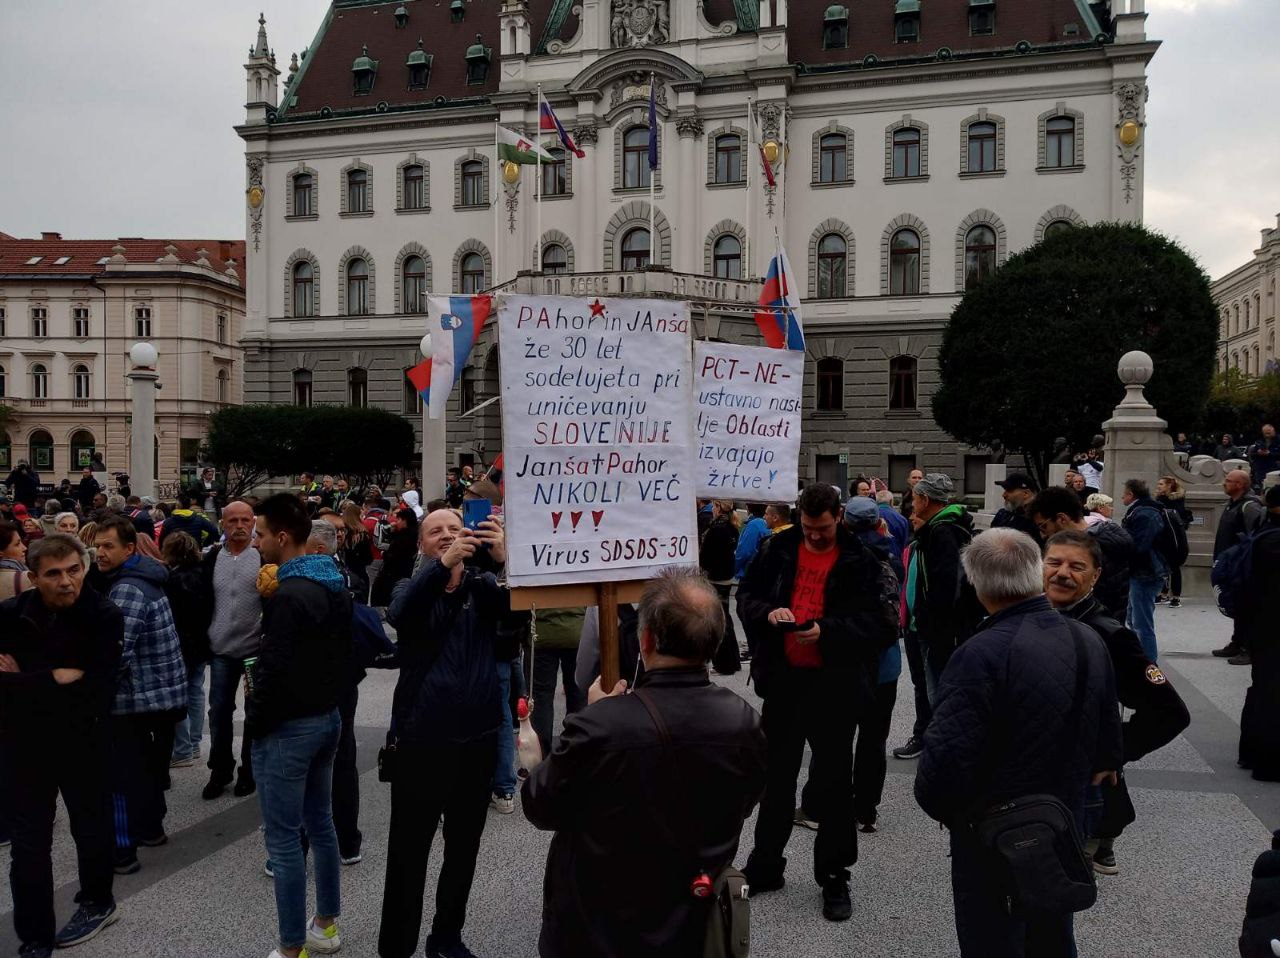 FOTO: Protestni shod v Ljubljani policija nadzoruje s konjenico in helikopterjem